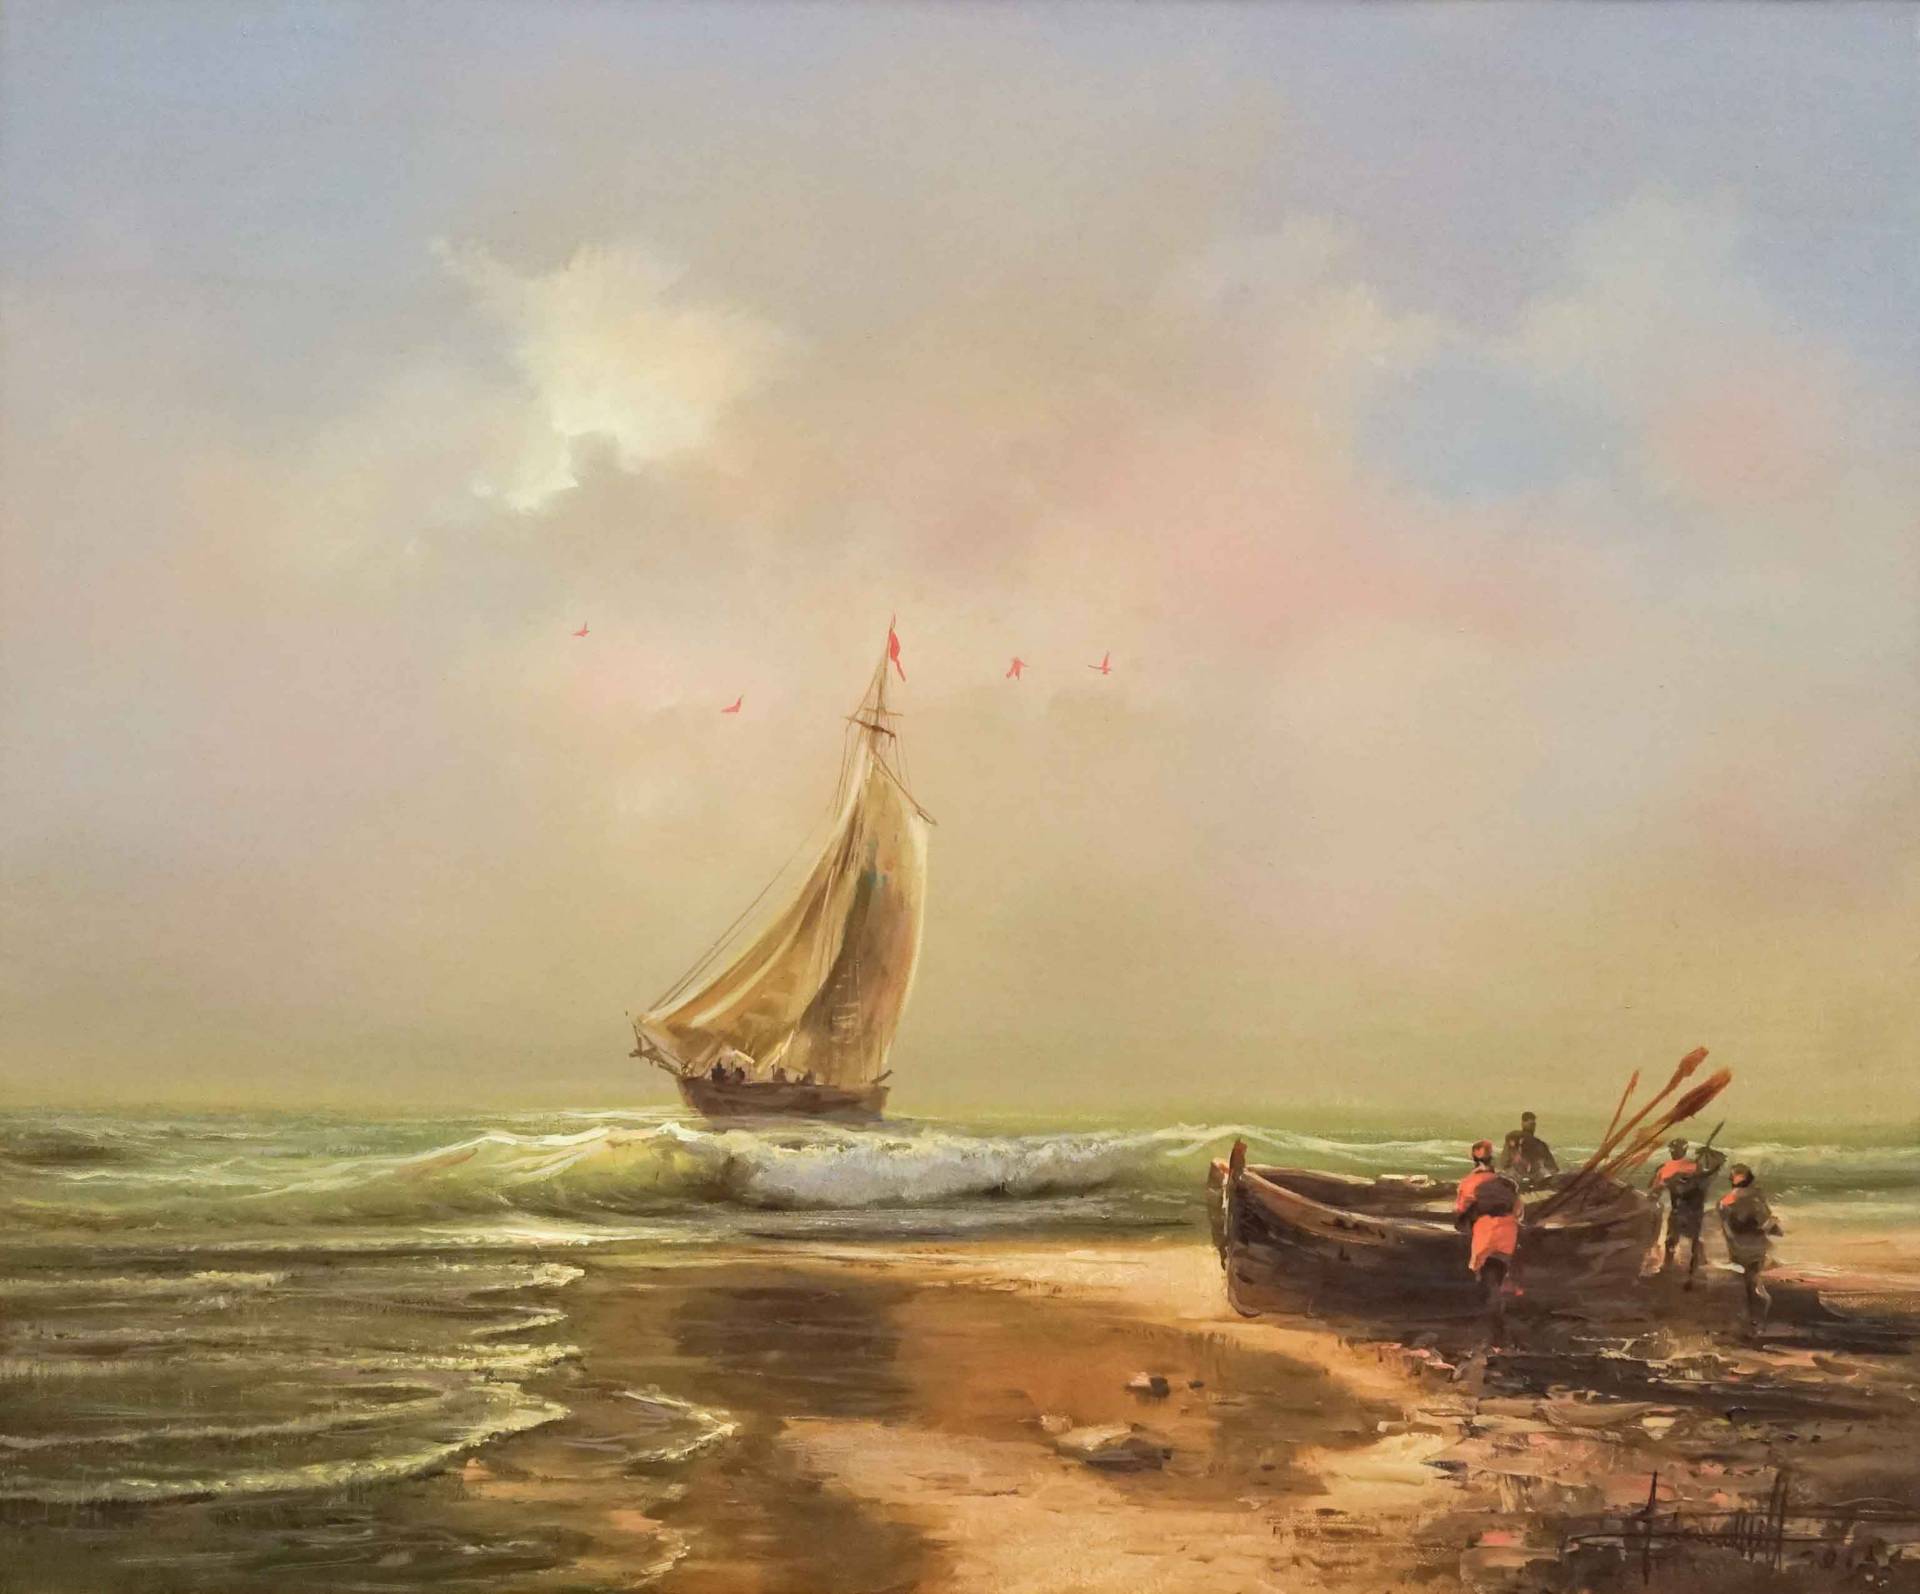 Boat - 1, Dmitry Balakhonov, Buy the painting Oil